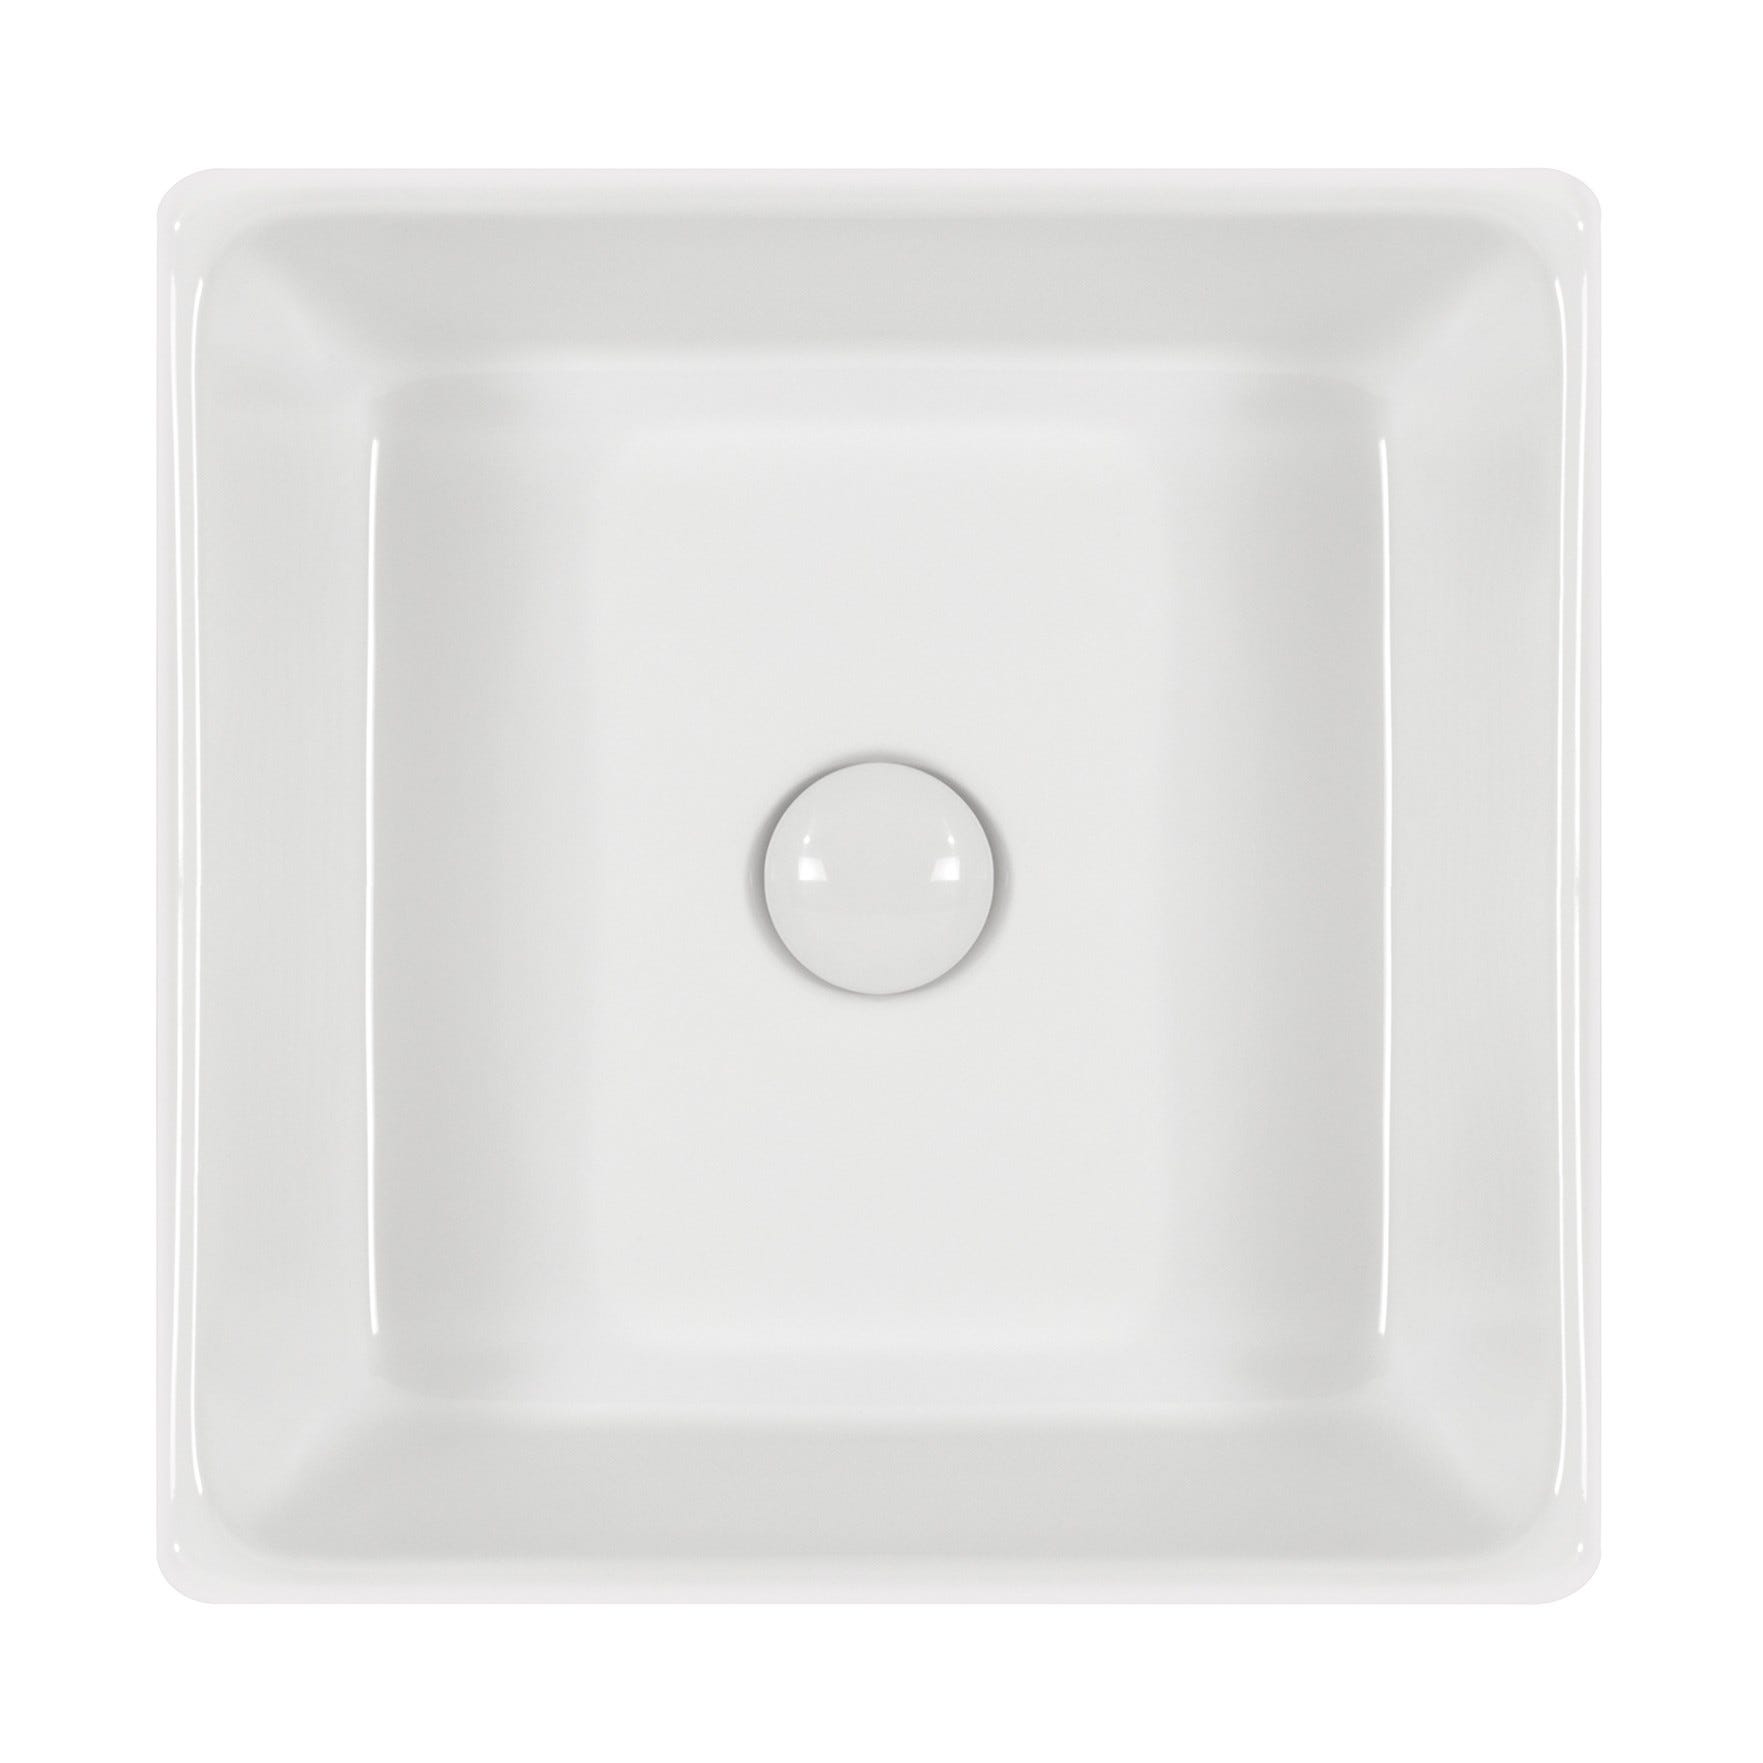 SALINE Vasque carrée à poser lavabo en céramique blanche 38 x 38 cm 4